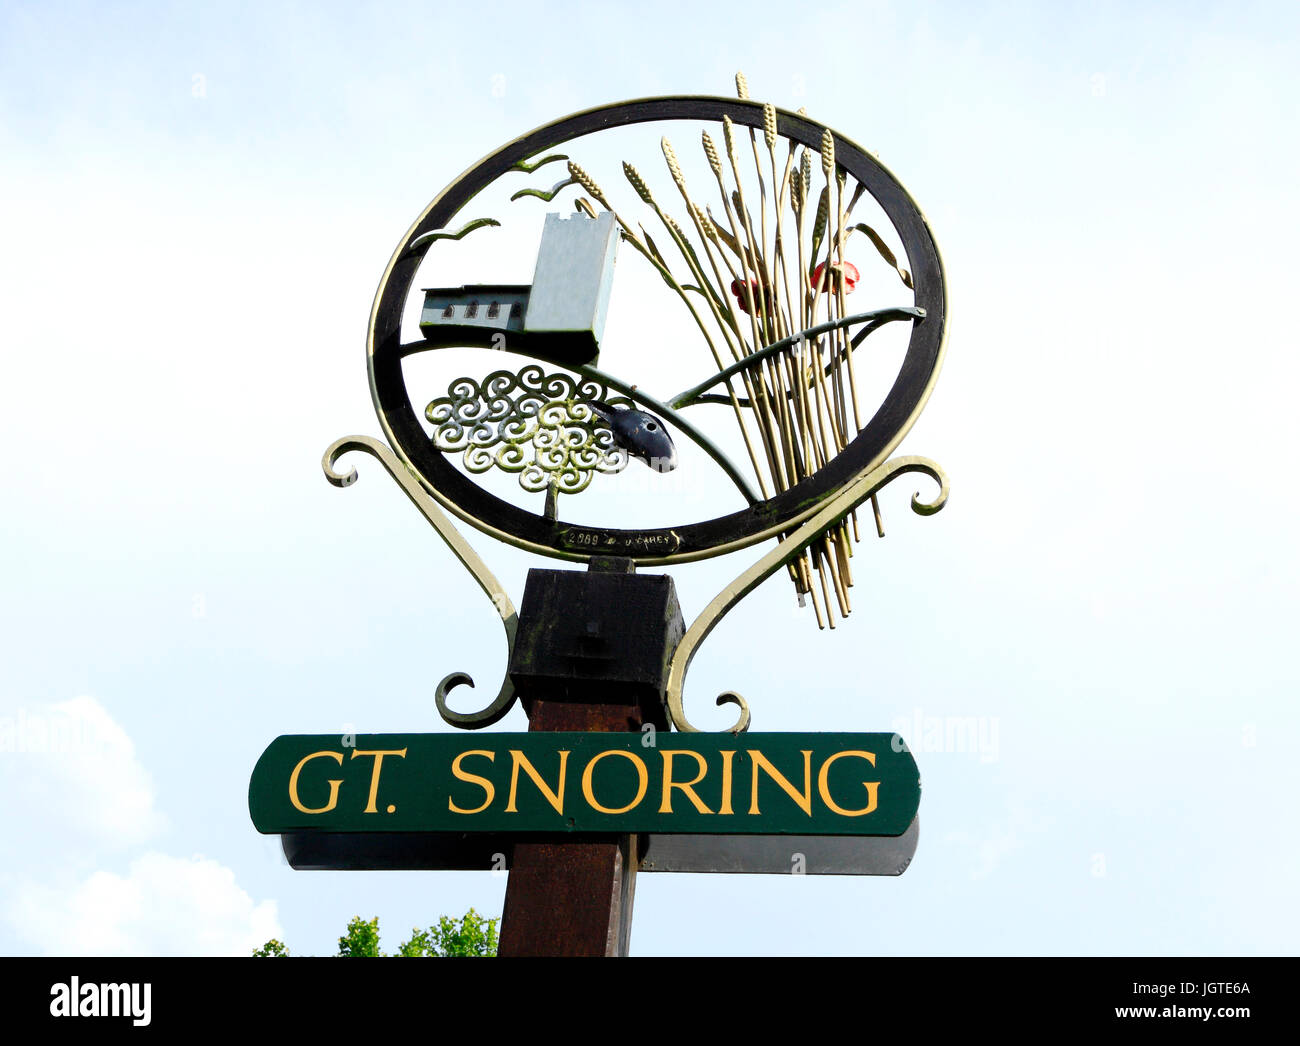 Gt. Snoring, Great Snoring, village, sign, bizarre English village name, names, Norfolk, England, UK. Stock Photo